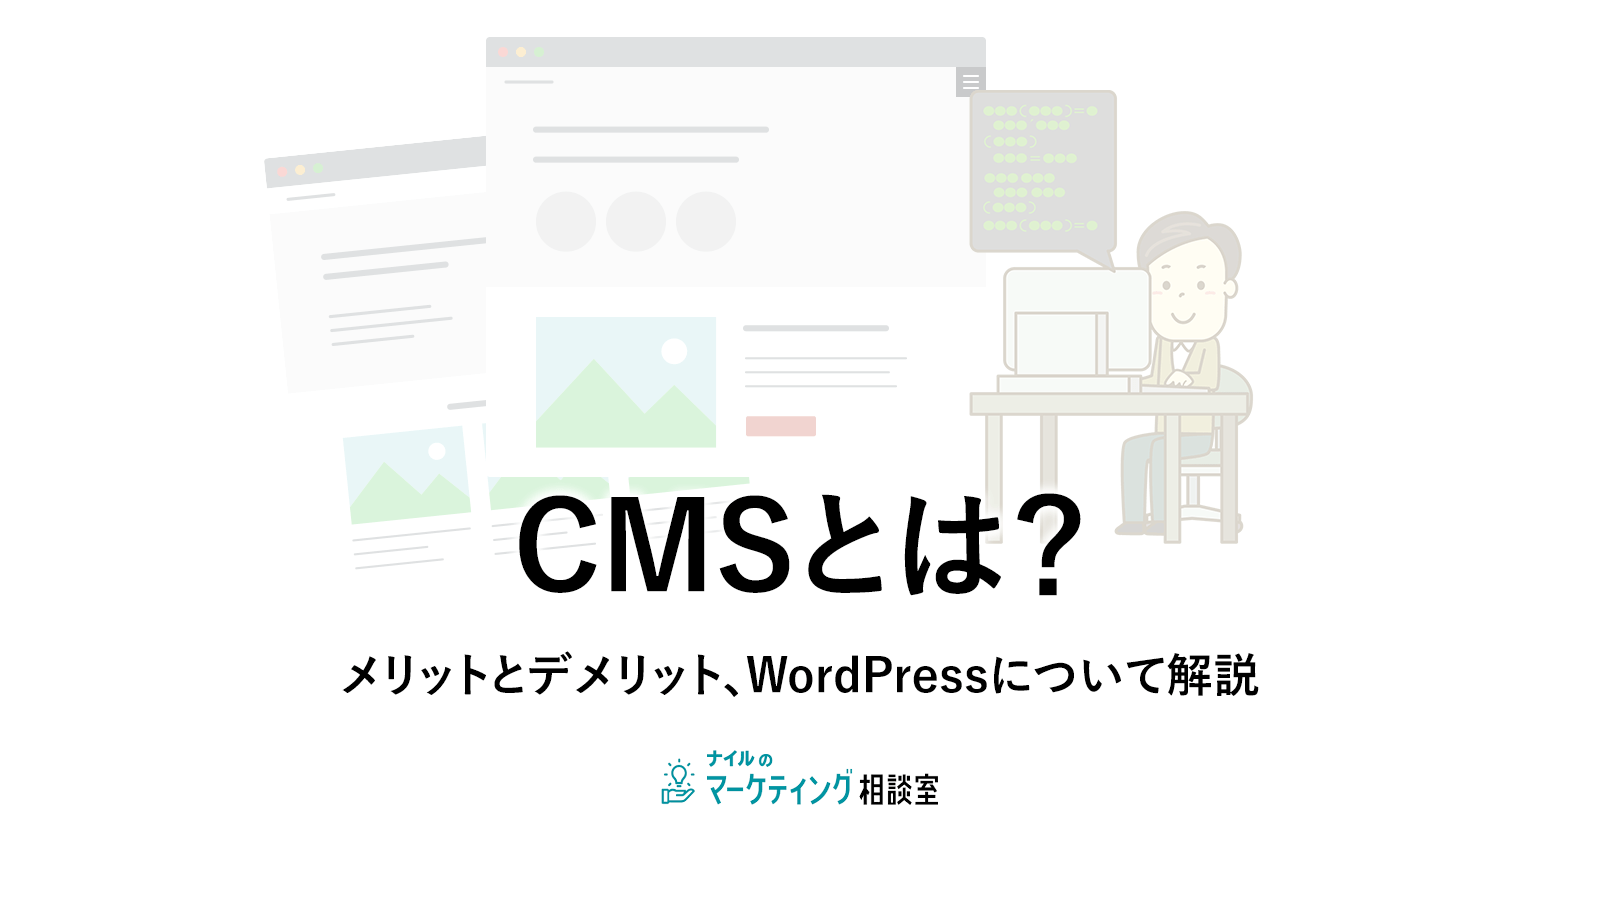 CMSとは？メリットとデメリット、WordPressについて解説